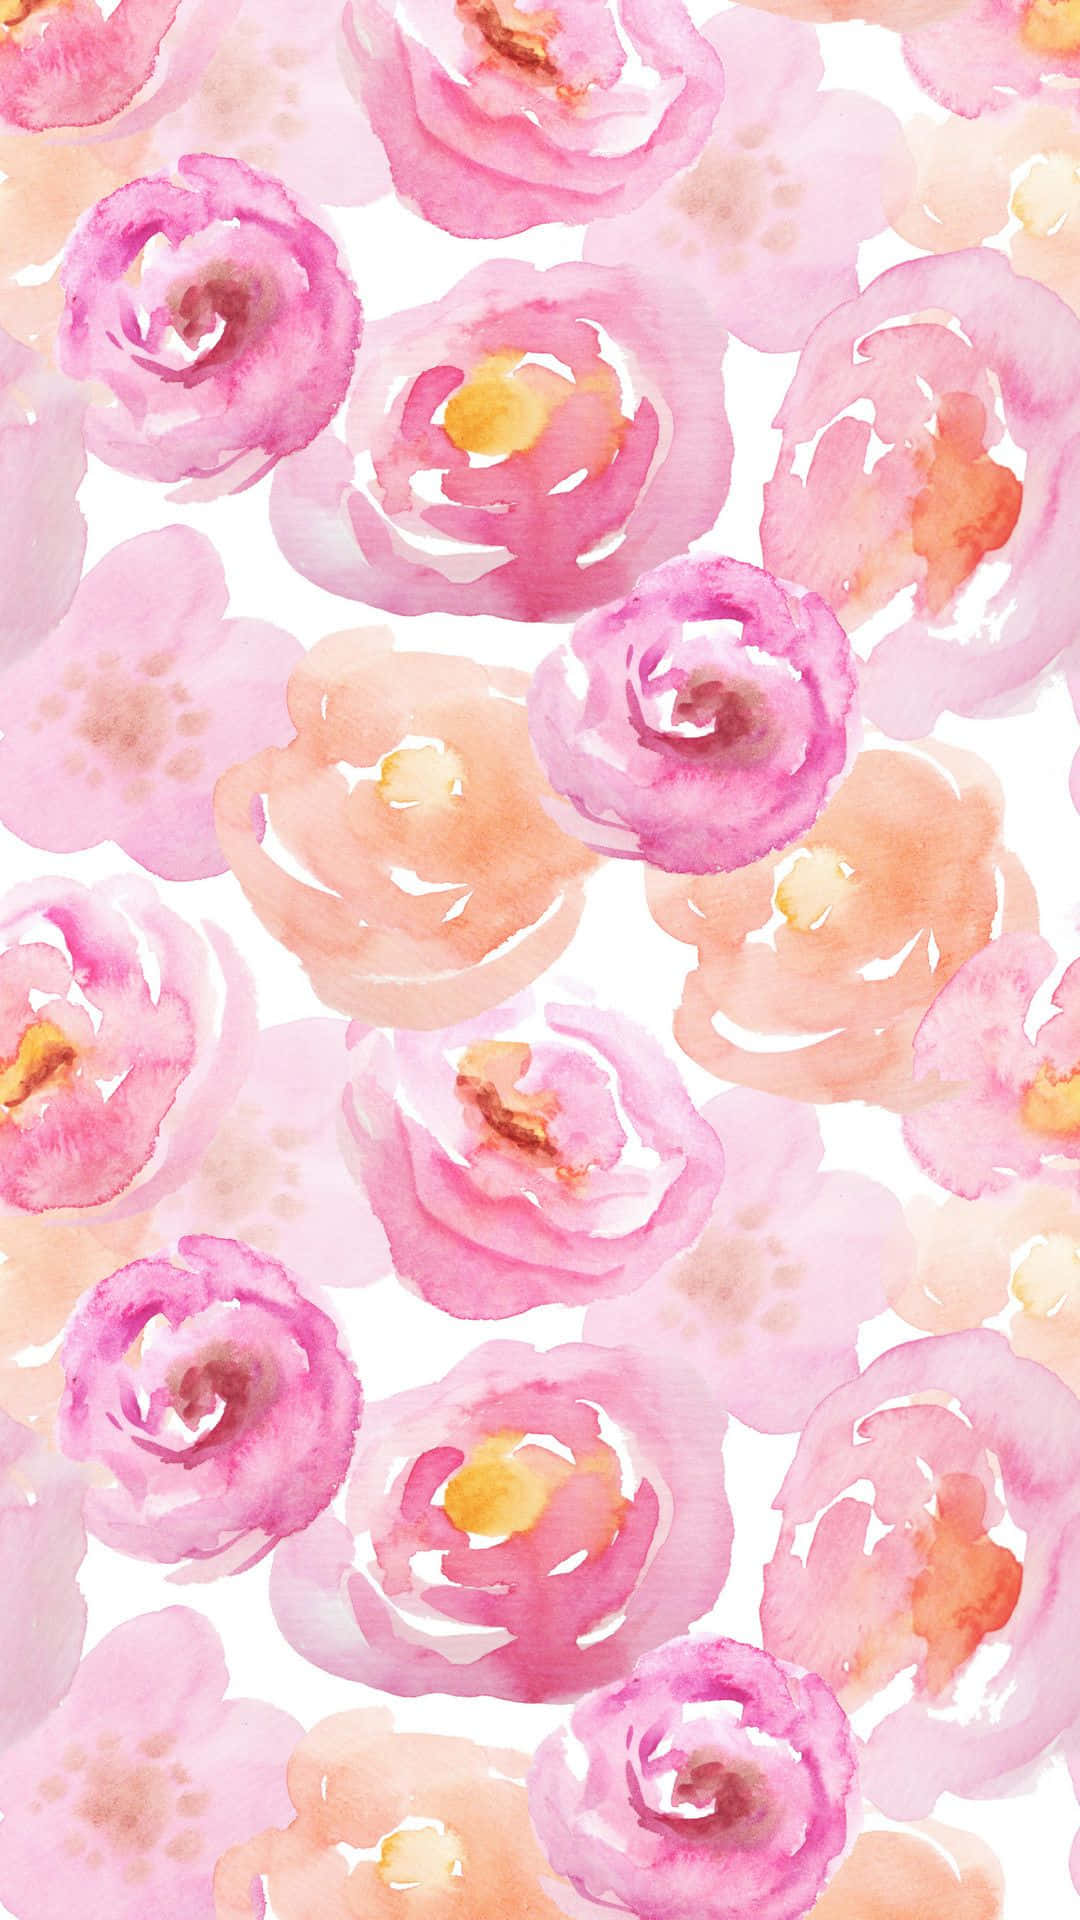 Firaen Blomstrande Vår Med Detta Fantastiska Rosa Blommönster På Dator- Eller Mobilskärmen. Wallpaper